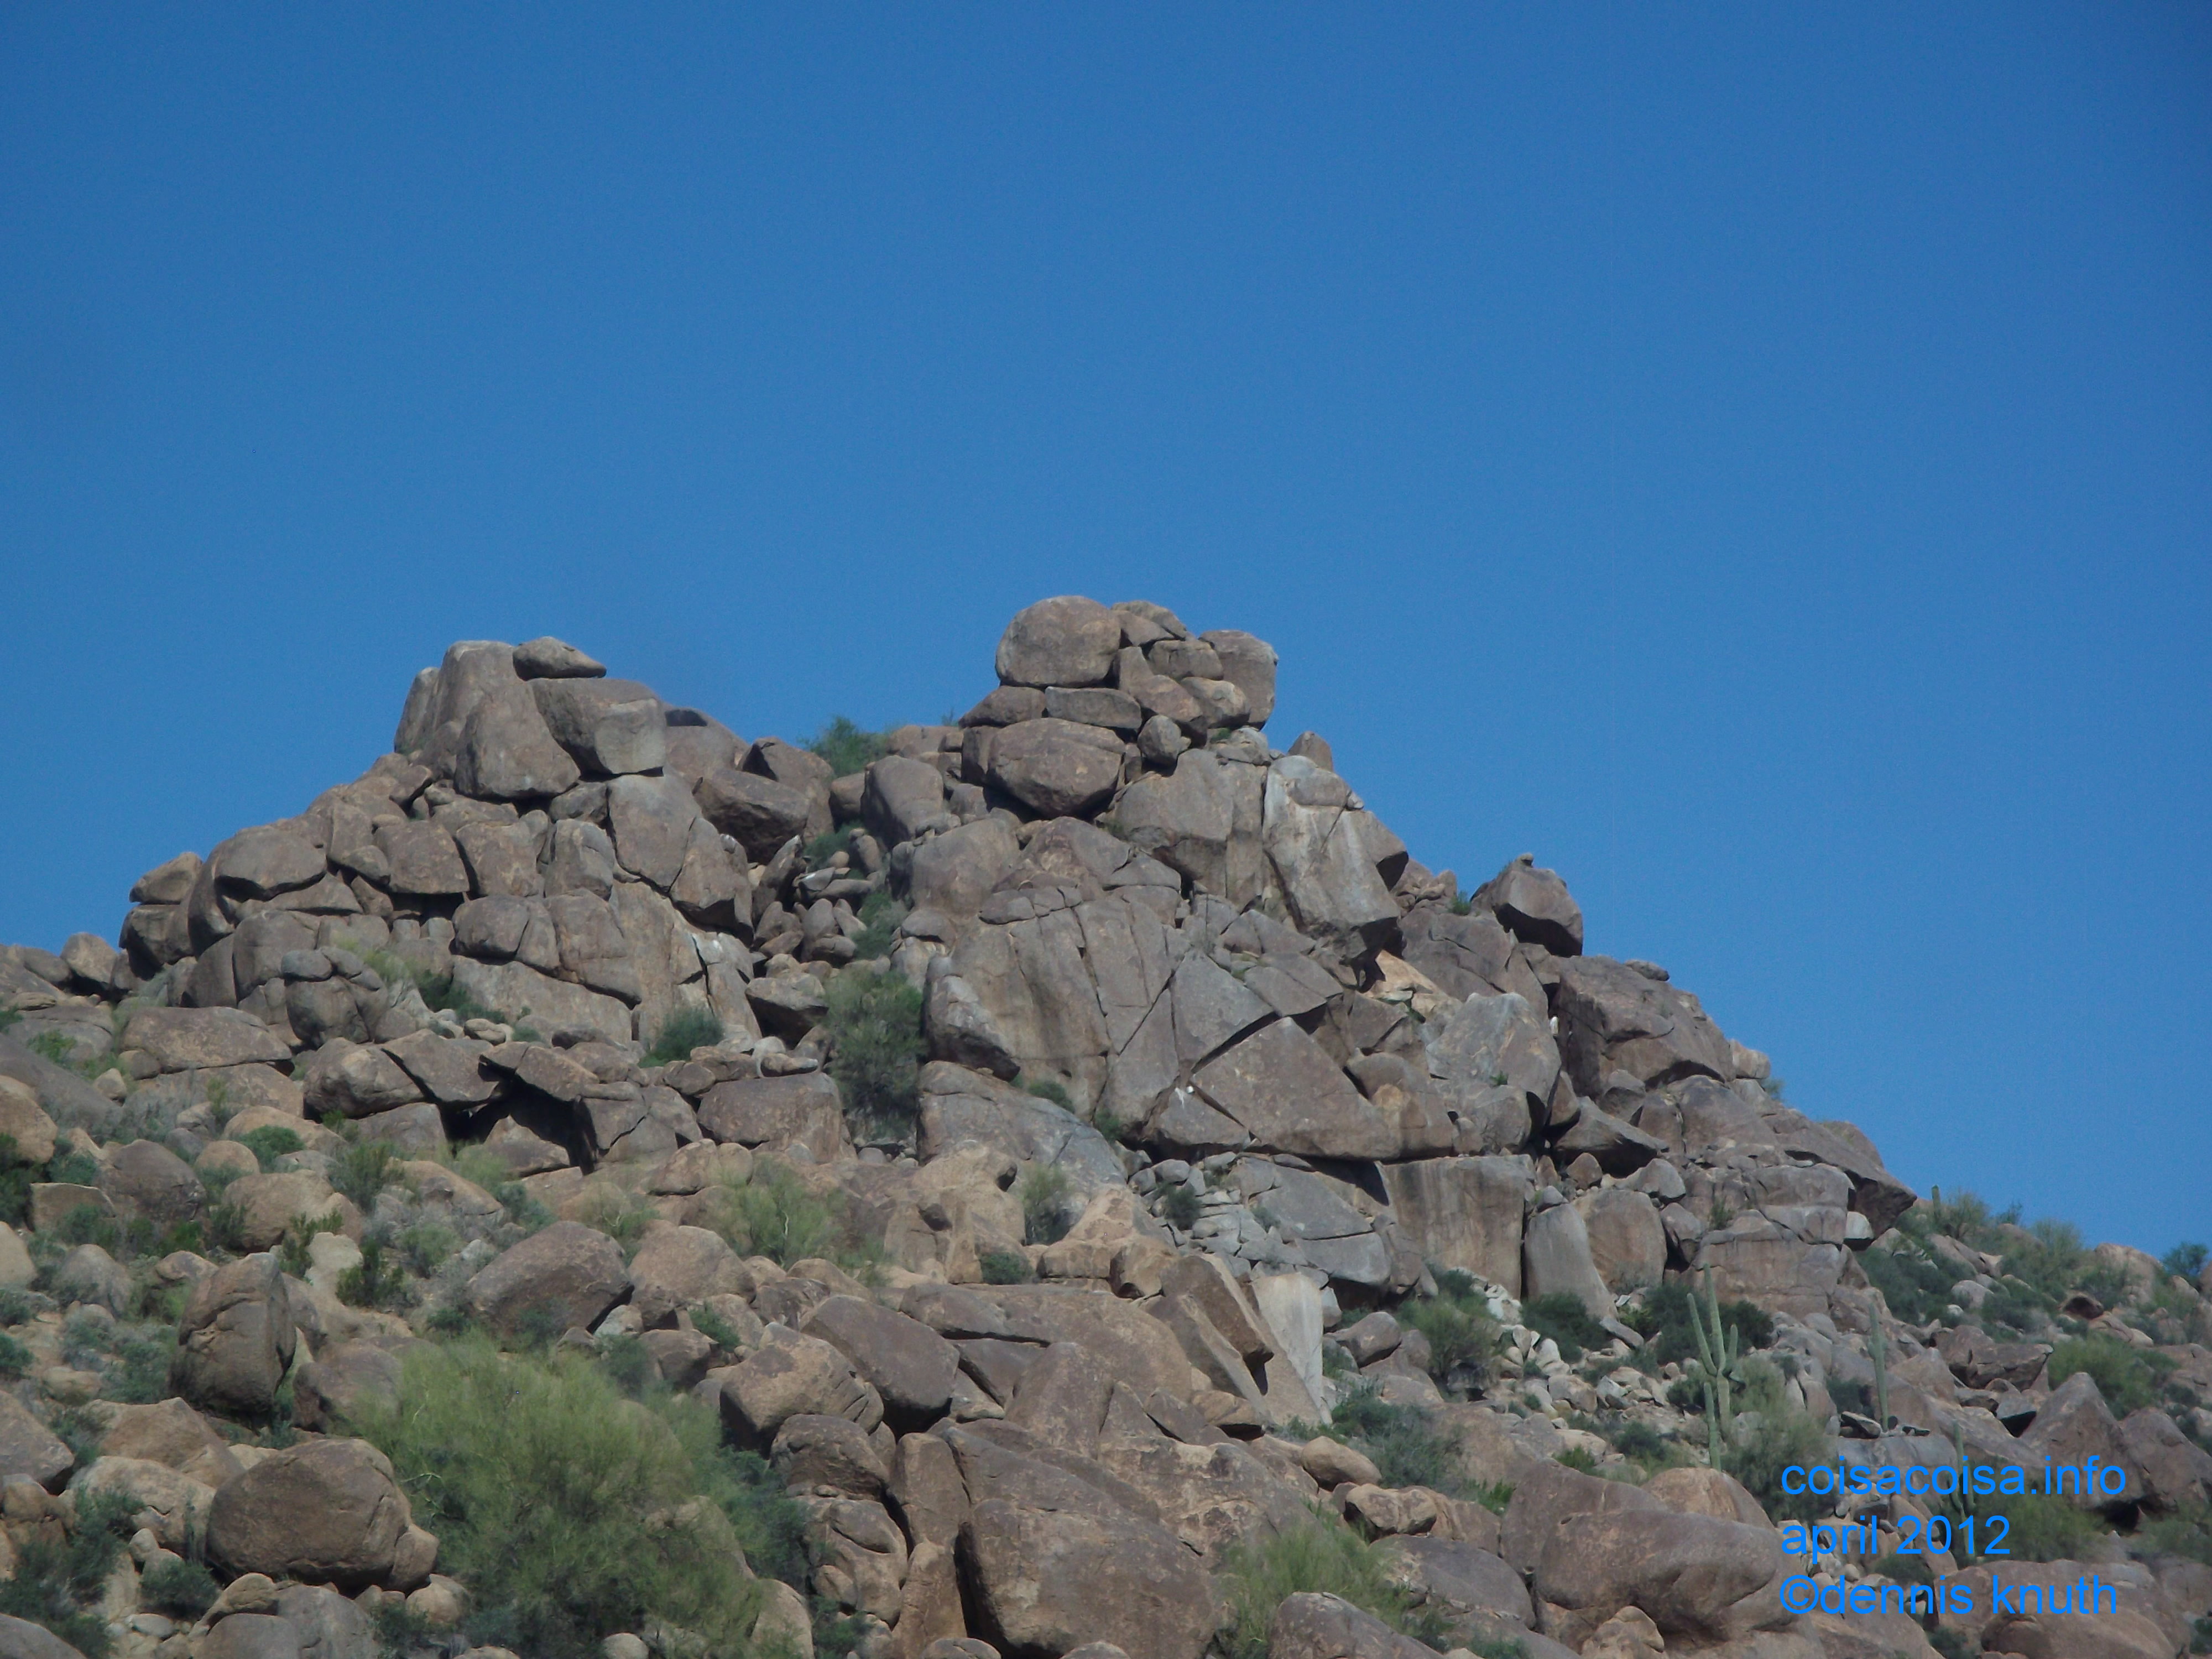 Broken mound of boulders in the Arizona Desert